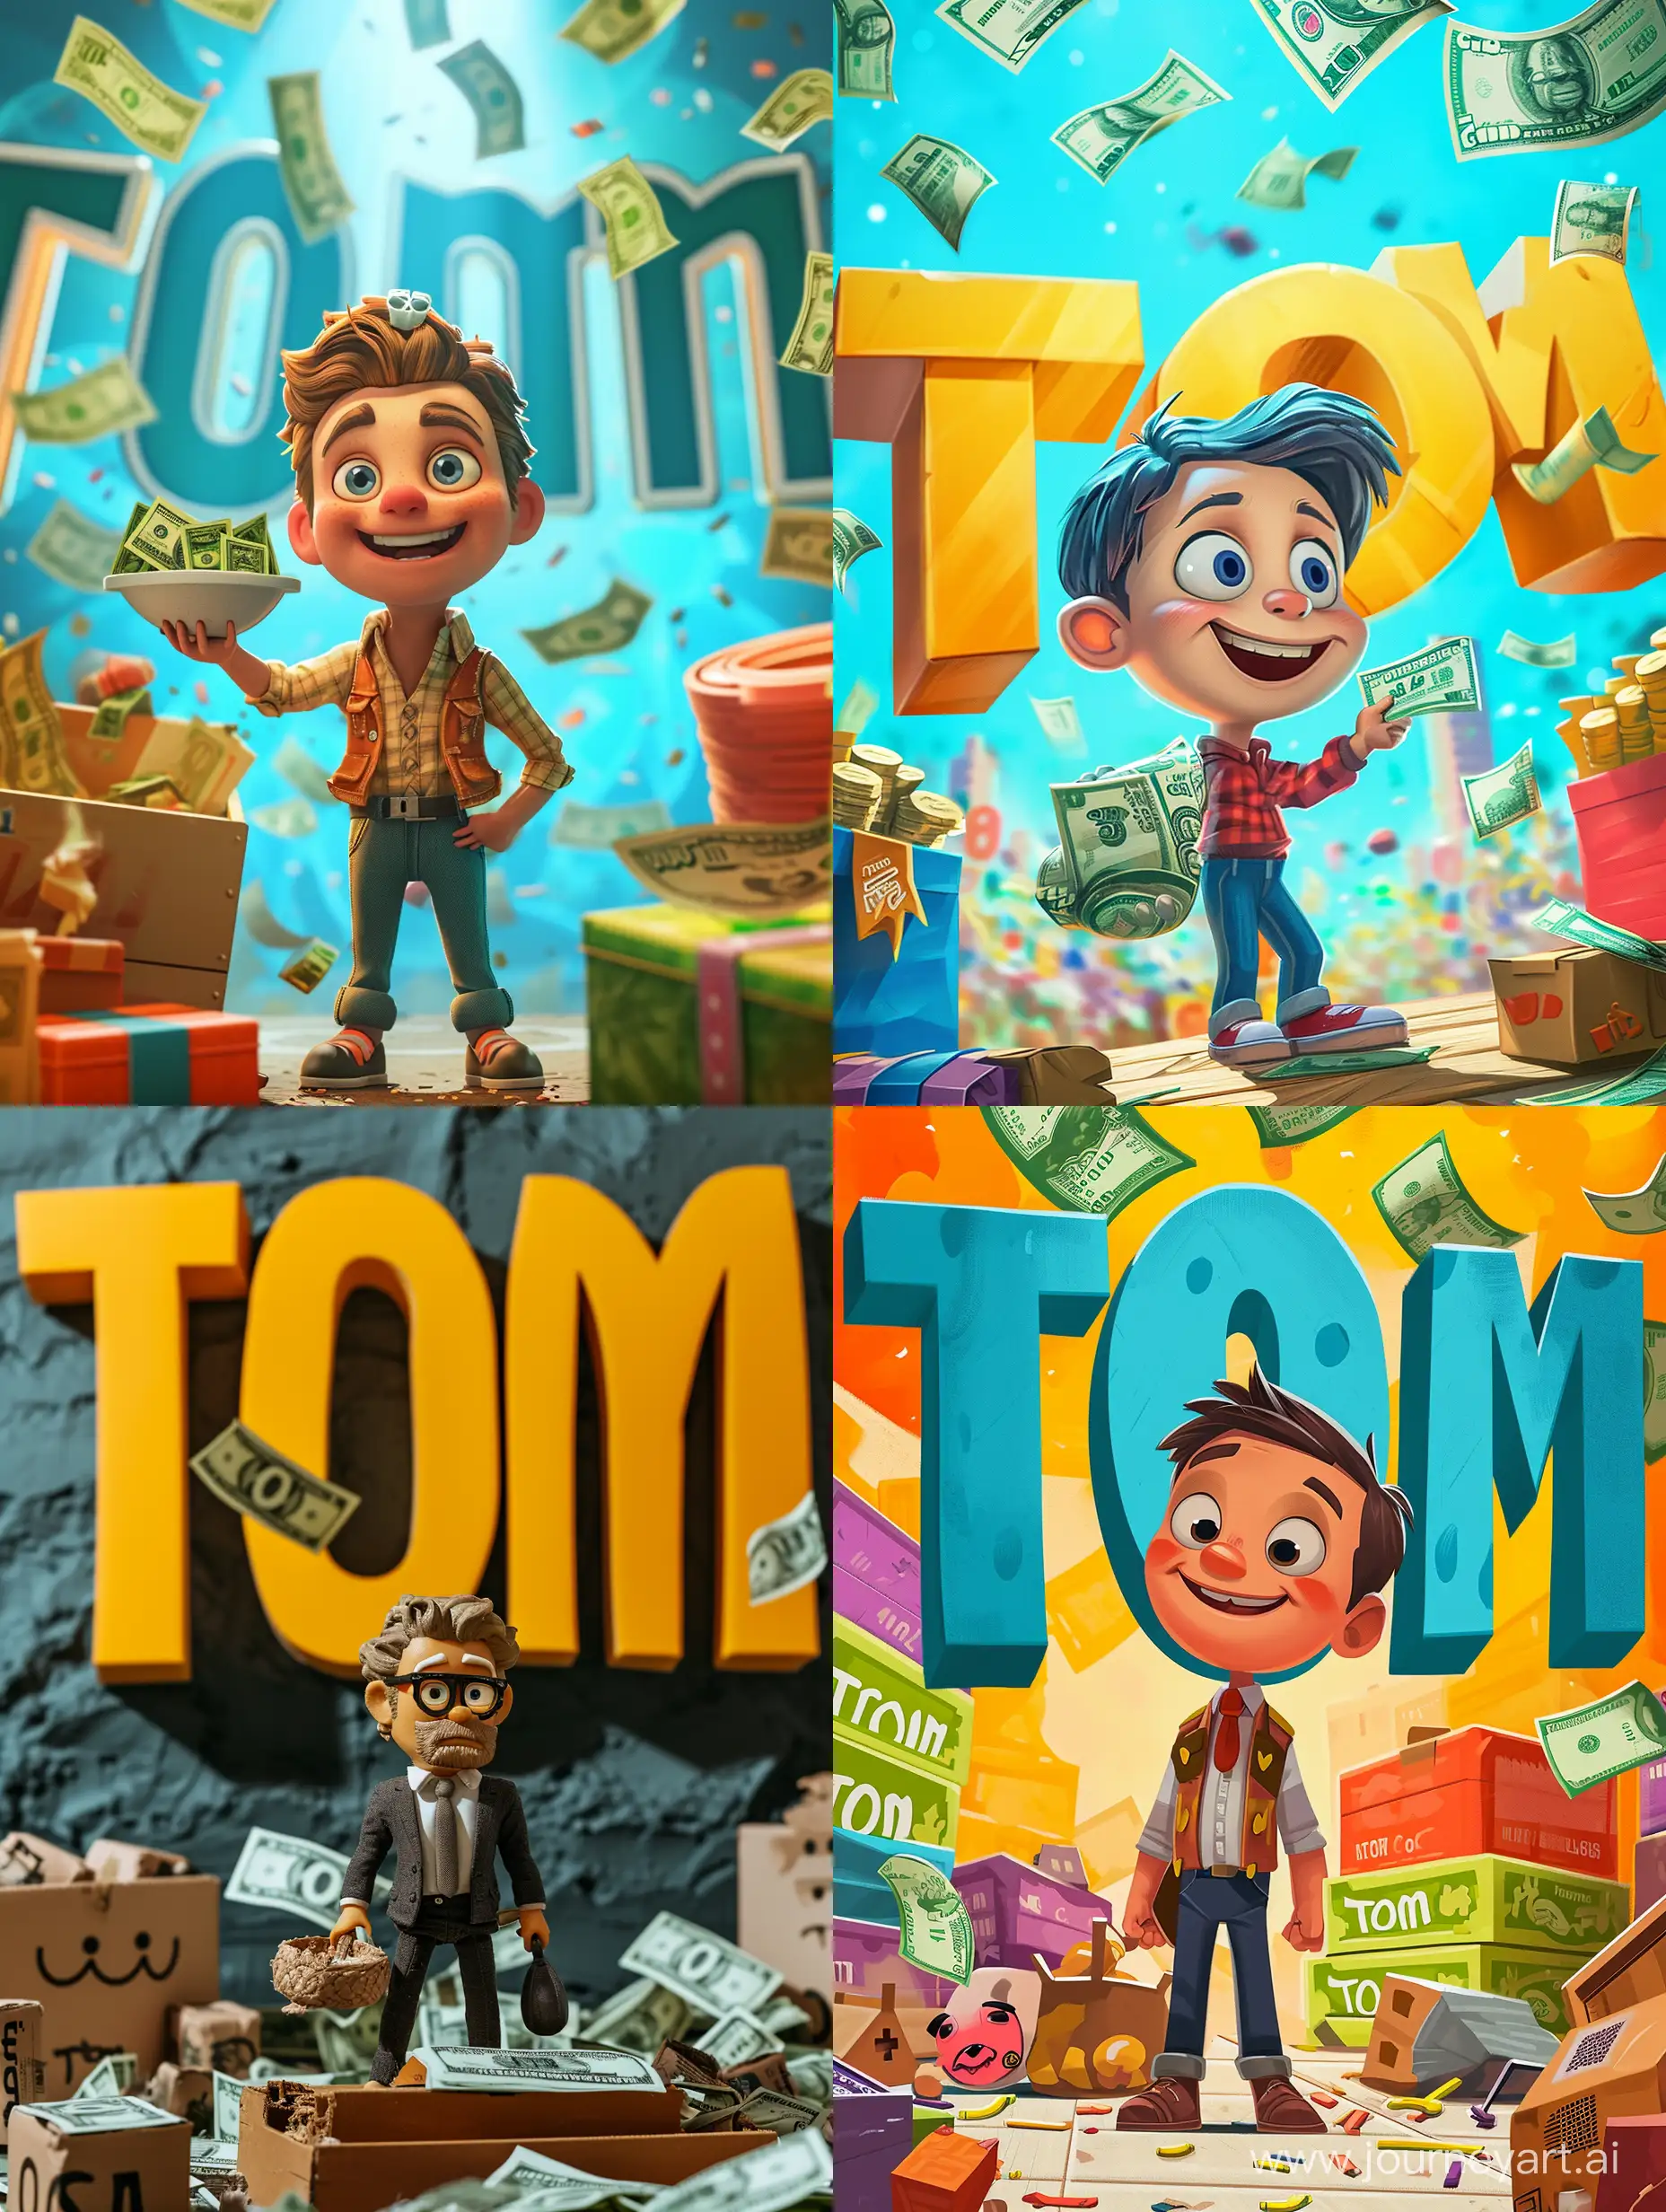 Картинка с персонажем, продавец, много денег, фон большие буквы "Tom"